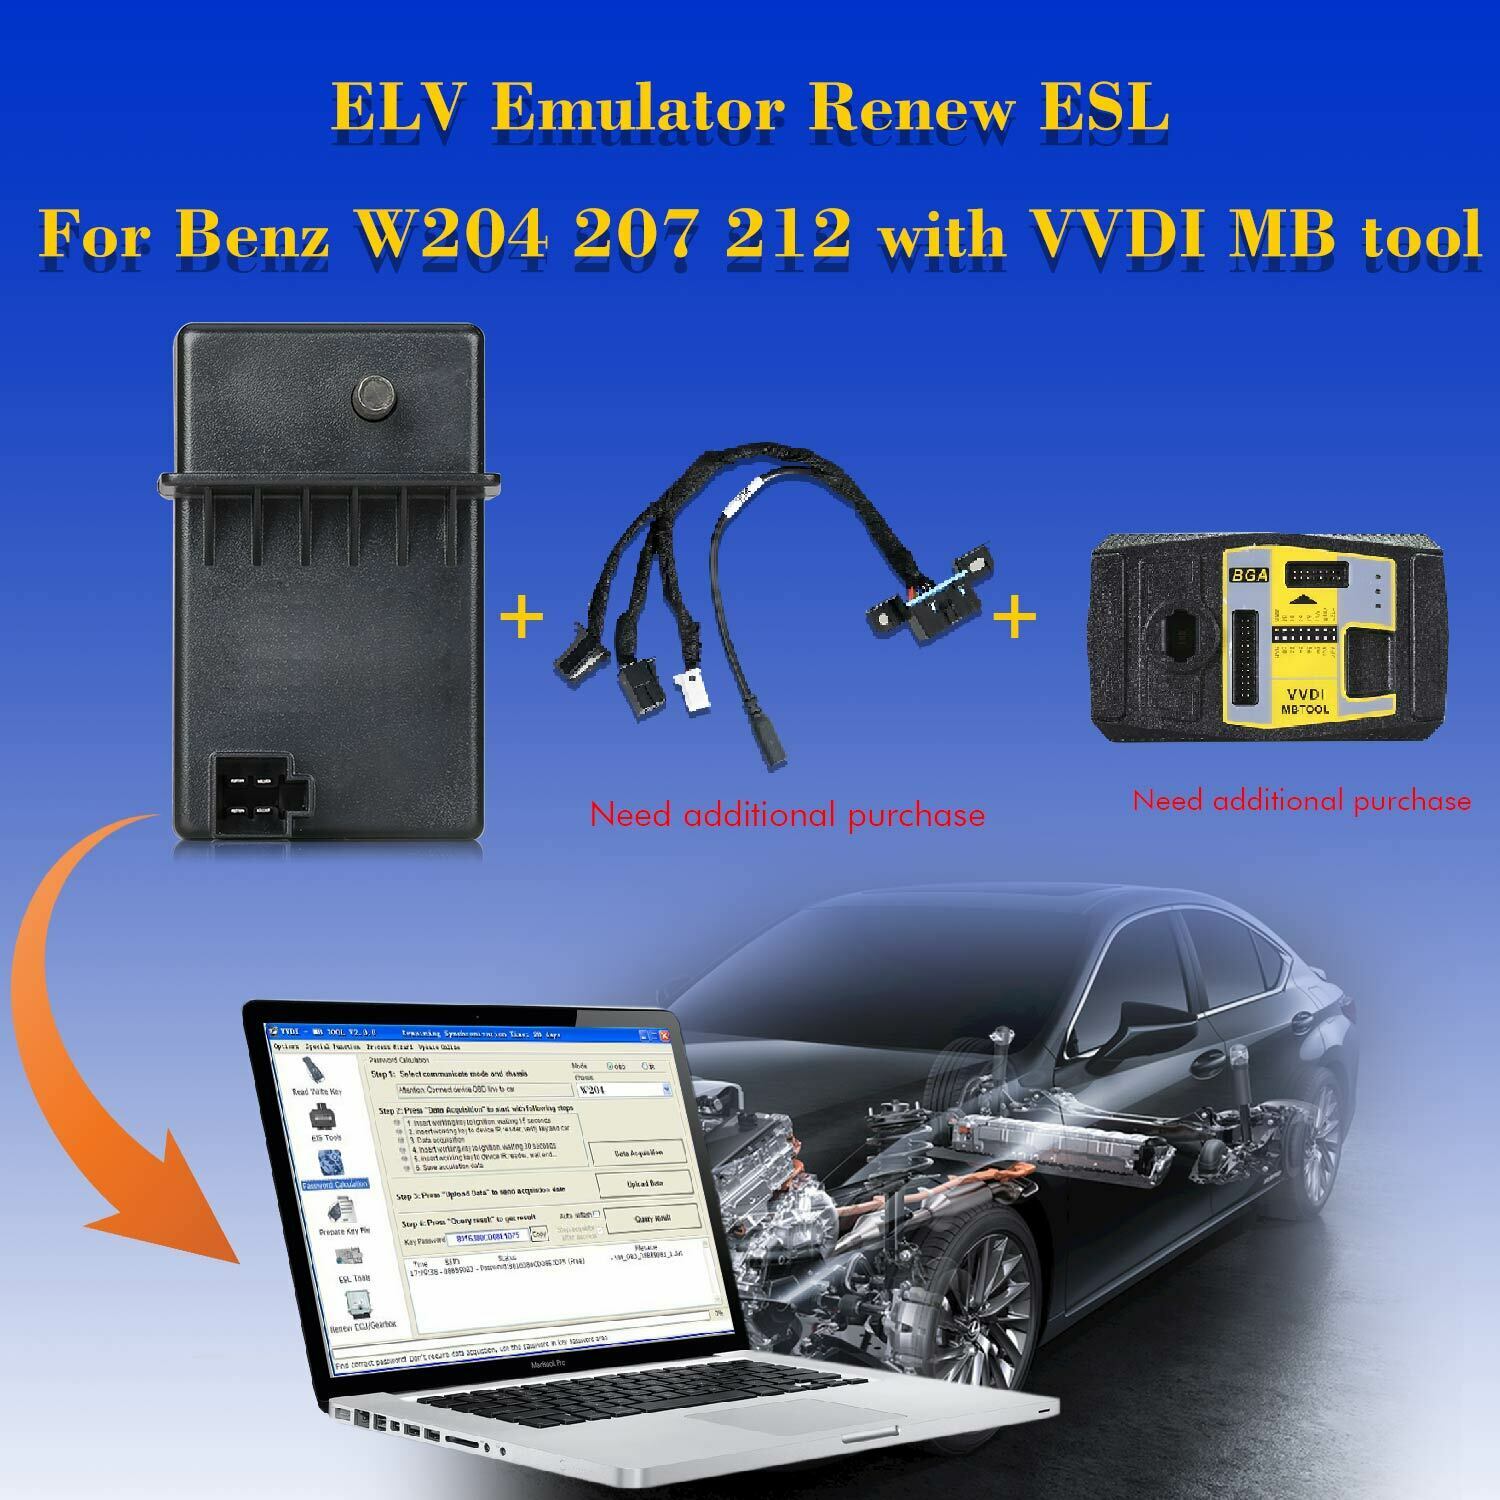 Xhorse ESL Emulator / ELV Emulator for Benz 204 207 212 with VVDI MB tool